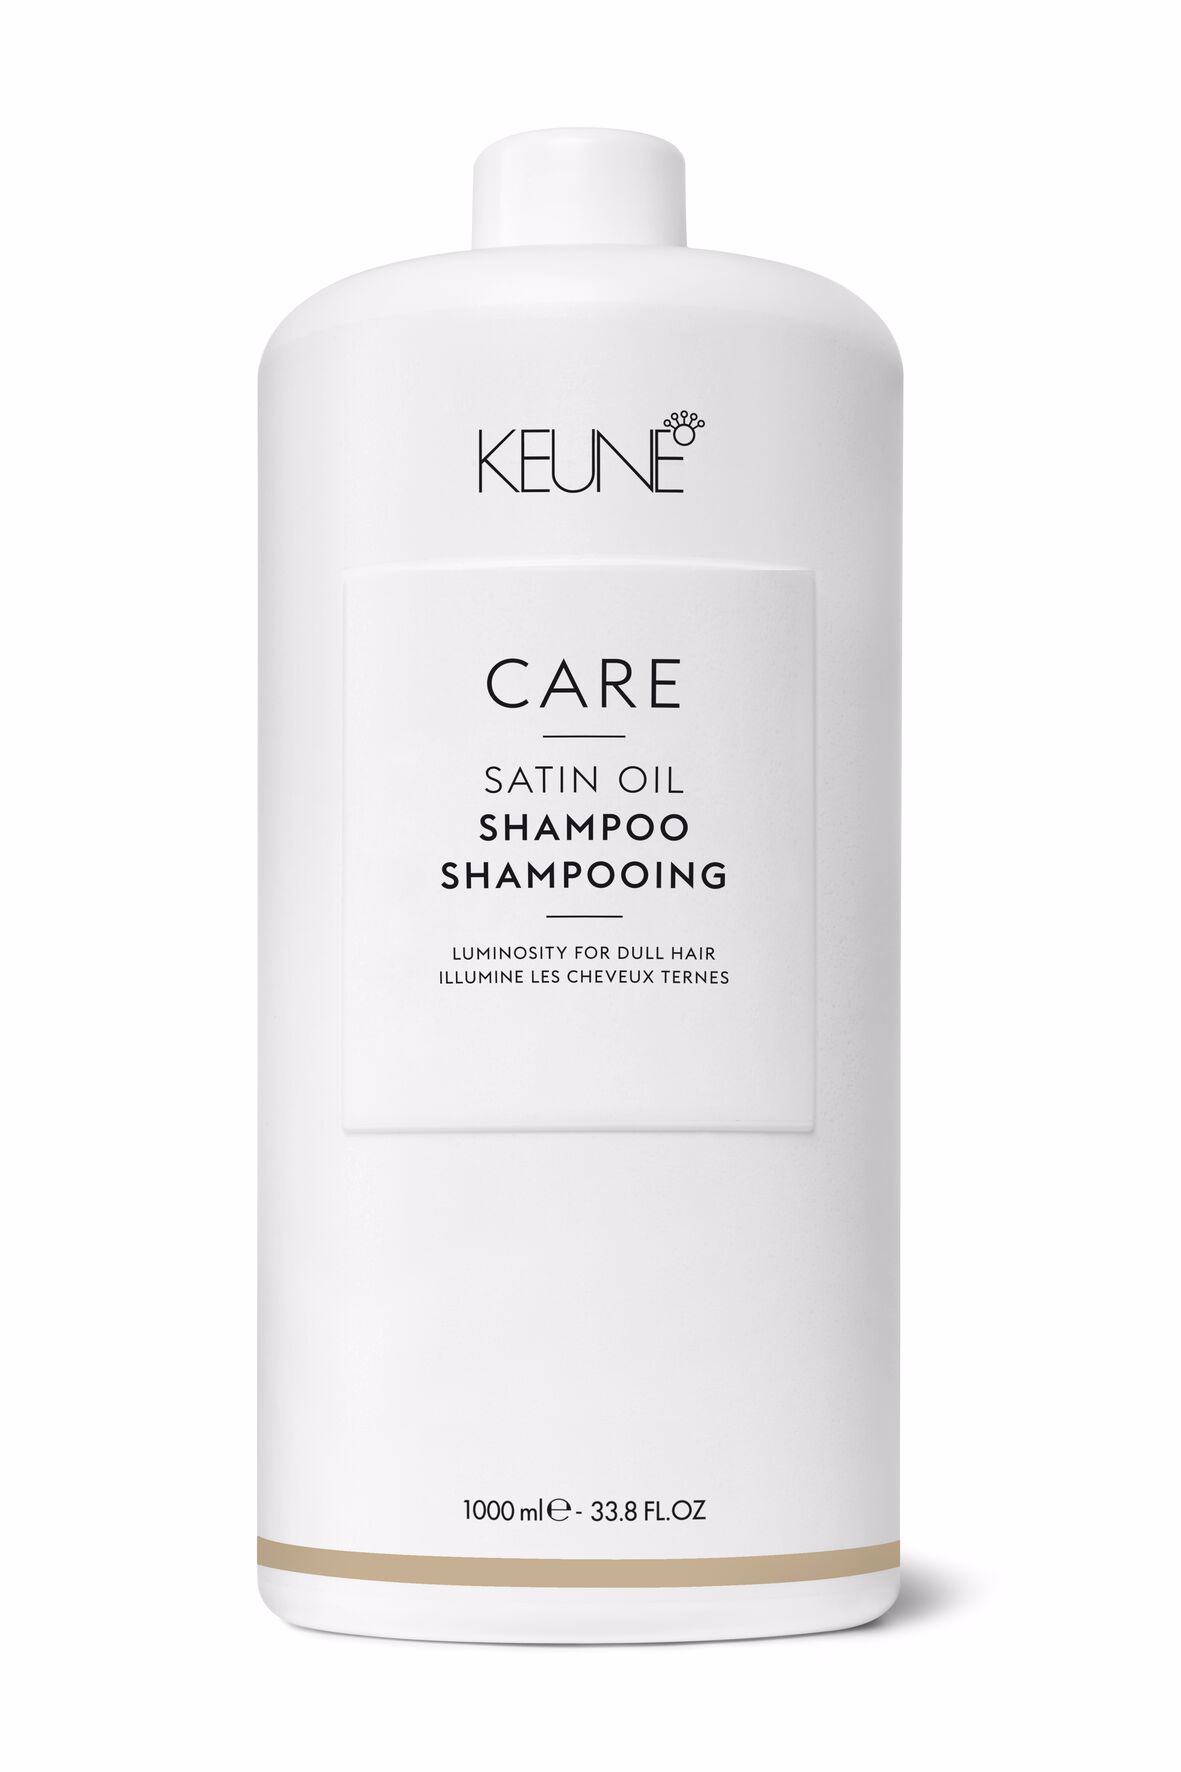 Für stumpfe, trockenes Haar ist das Satin Oil Shampoo das ideale Haarpflegeprodukt. Dank seiner innovativen, leichten Formel erstrahlen Ihre Haare in frischem, gesundem und glänzendem Glanz. Keune.ch.